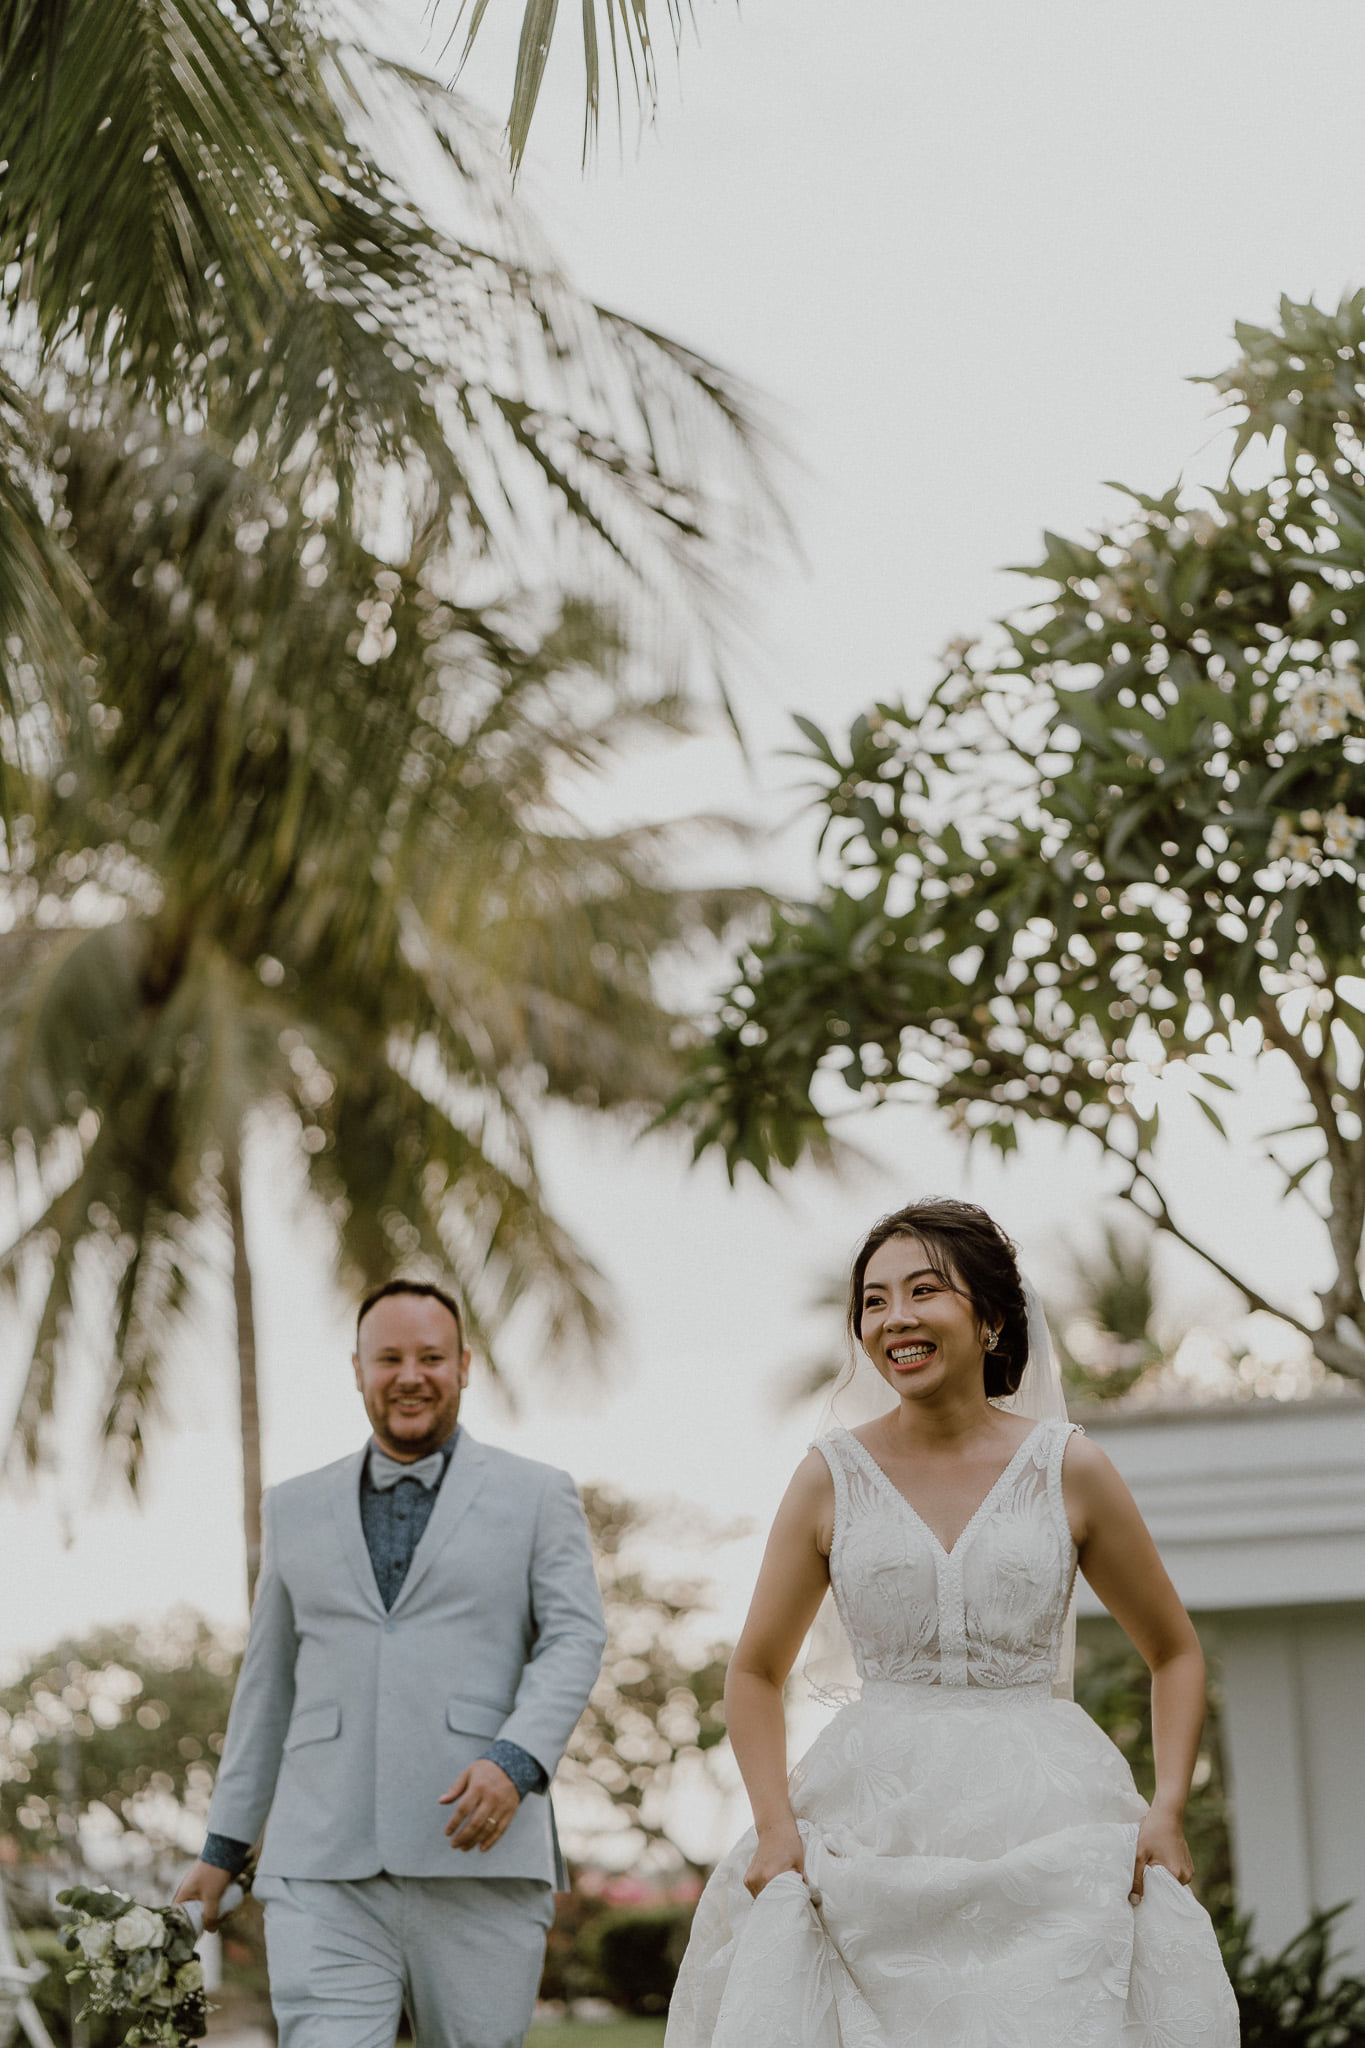 The Wedding Day | Patrick & Nhung at Cha